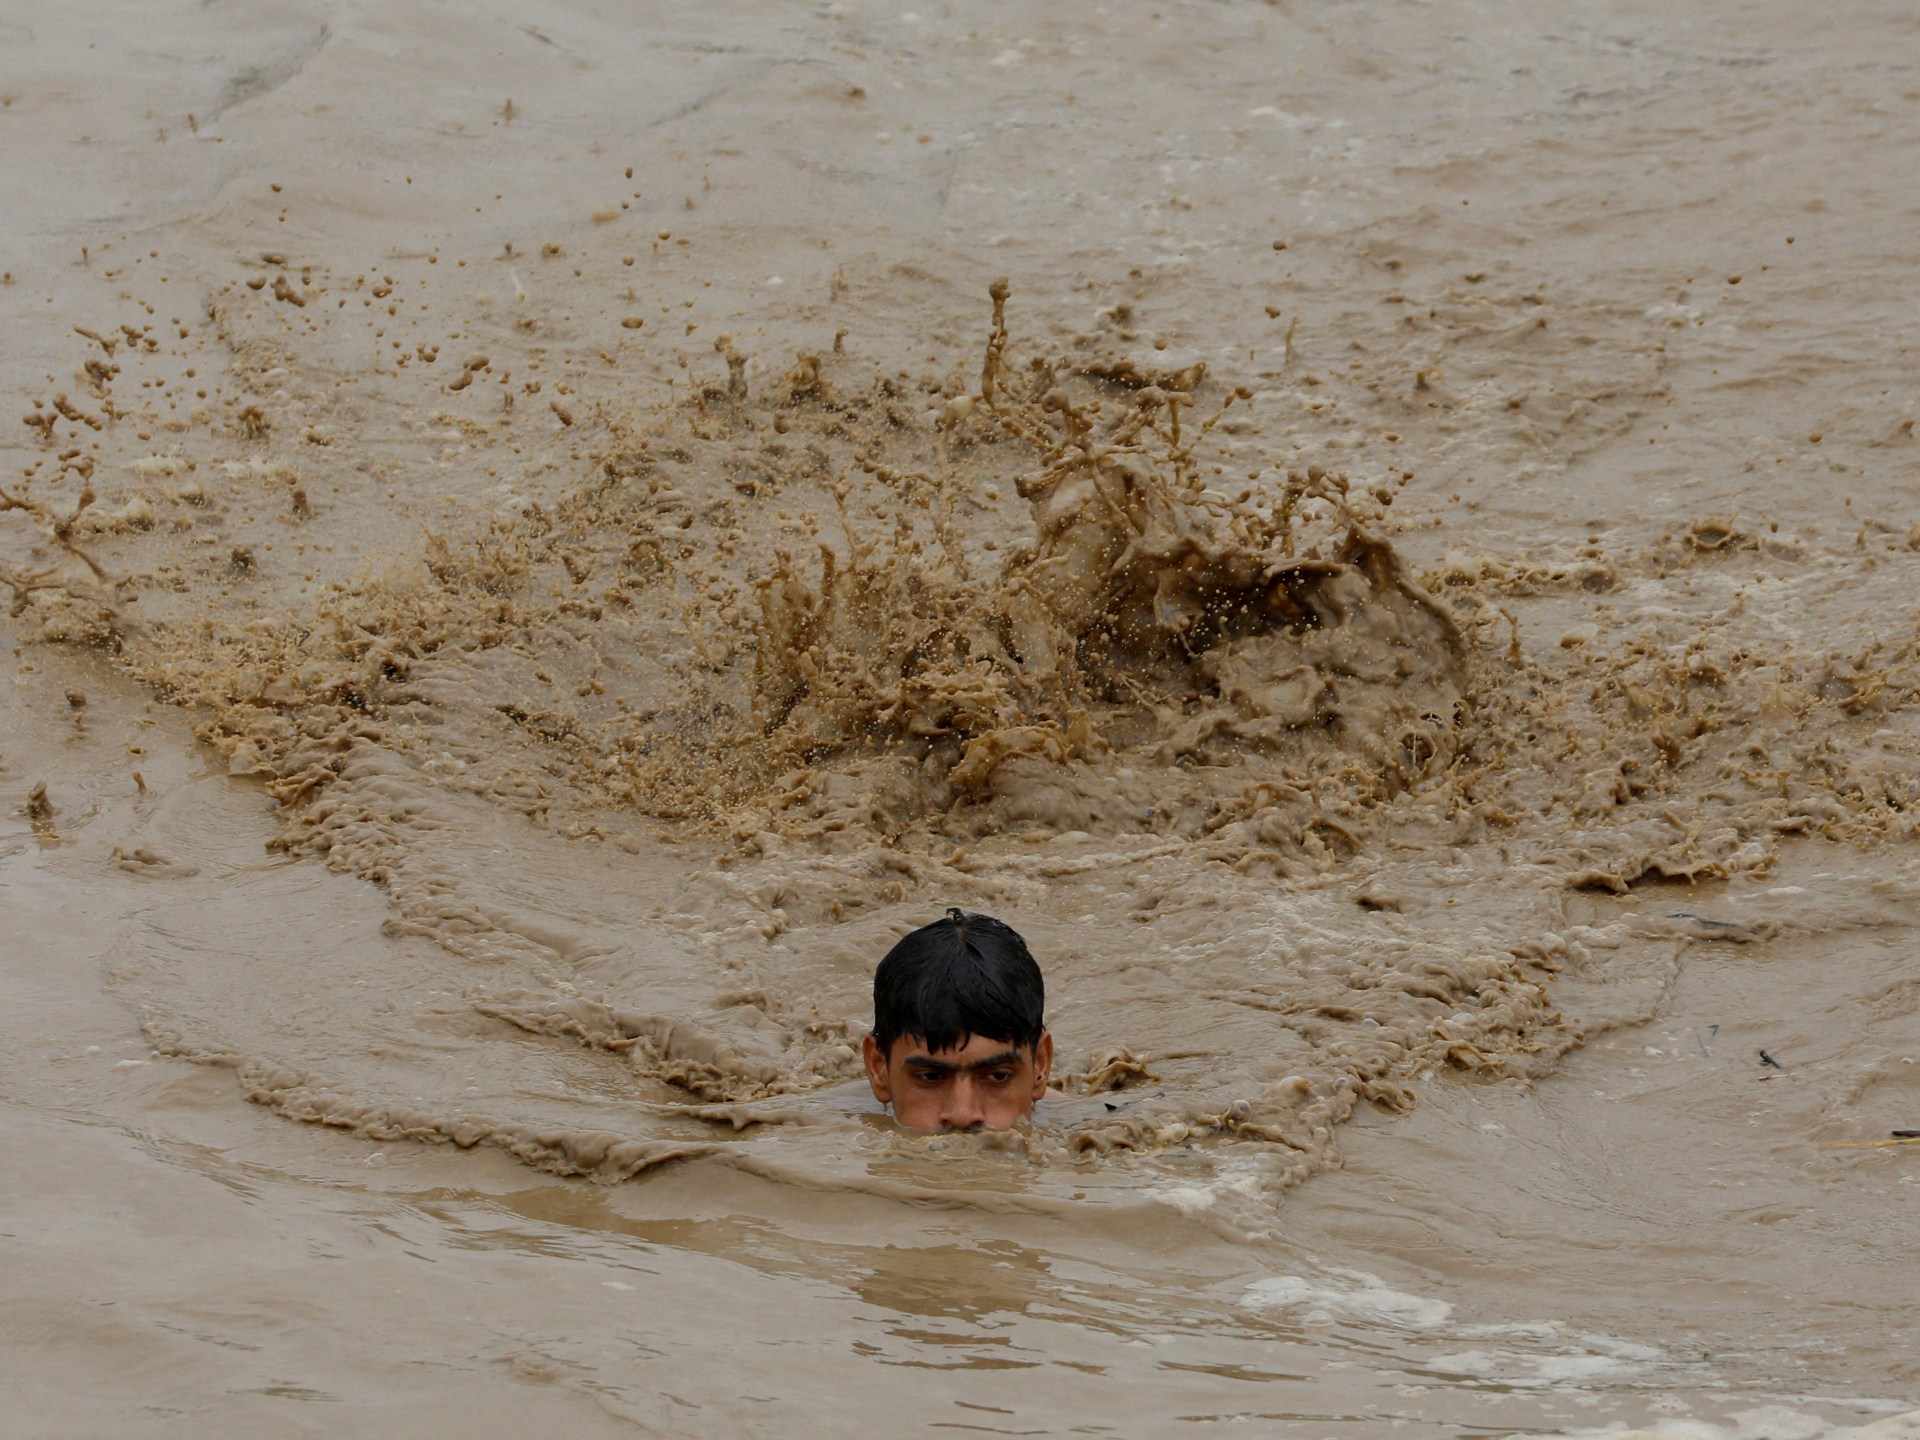 Bei heftigen Regenfällen in Pakistan kamen Dutzende Menschen ums Leben |  Nachrichten zur Klimakrise